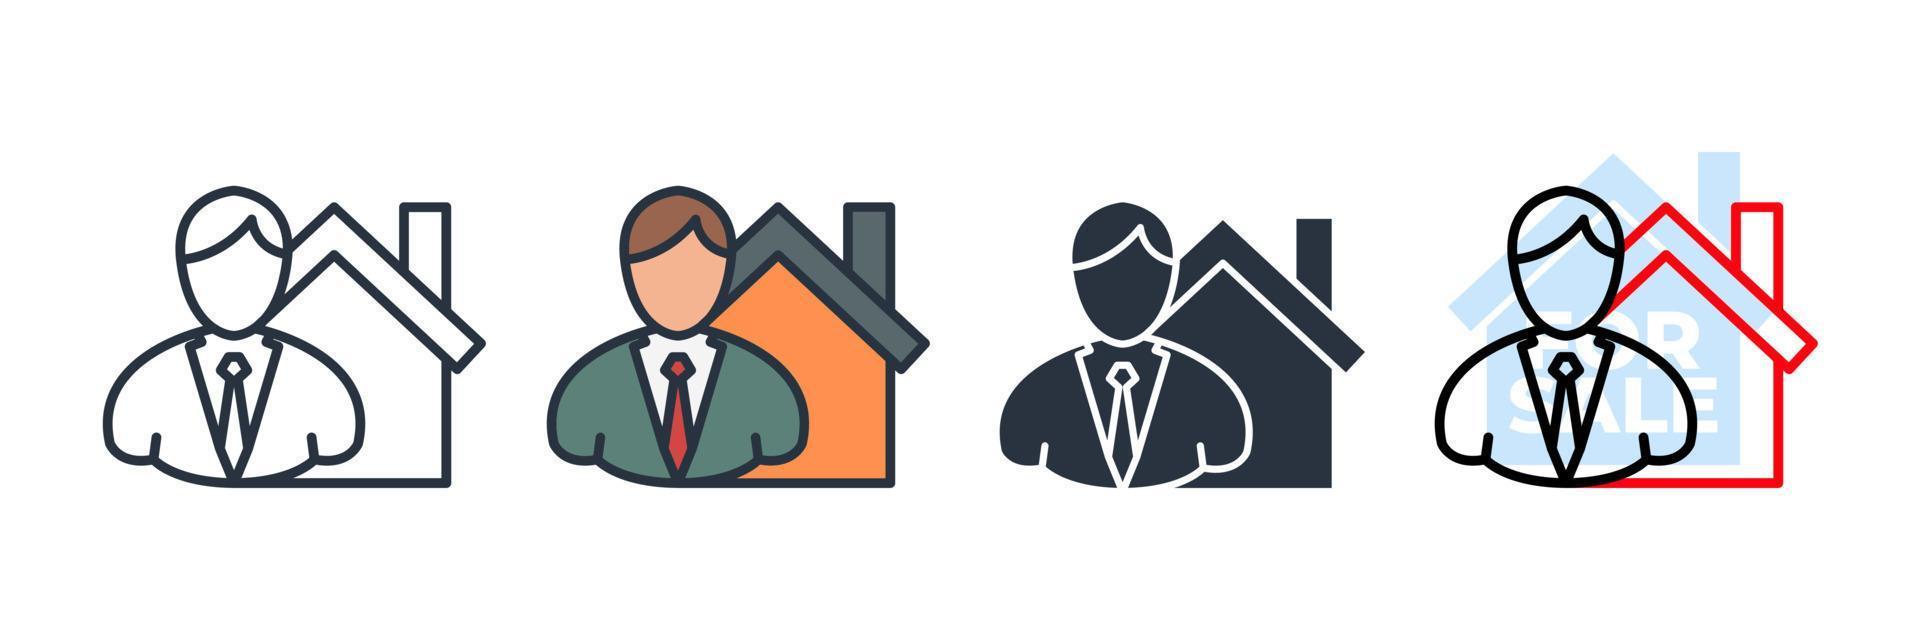 Makler-Symbol-Logo-Vektor-Illustration. Geschäftsmann und Haussymbolvorlage für Grafik- und Webdesign-Sammlung vektor